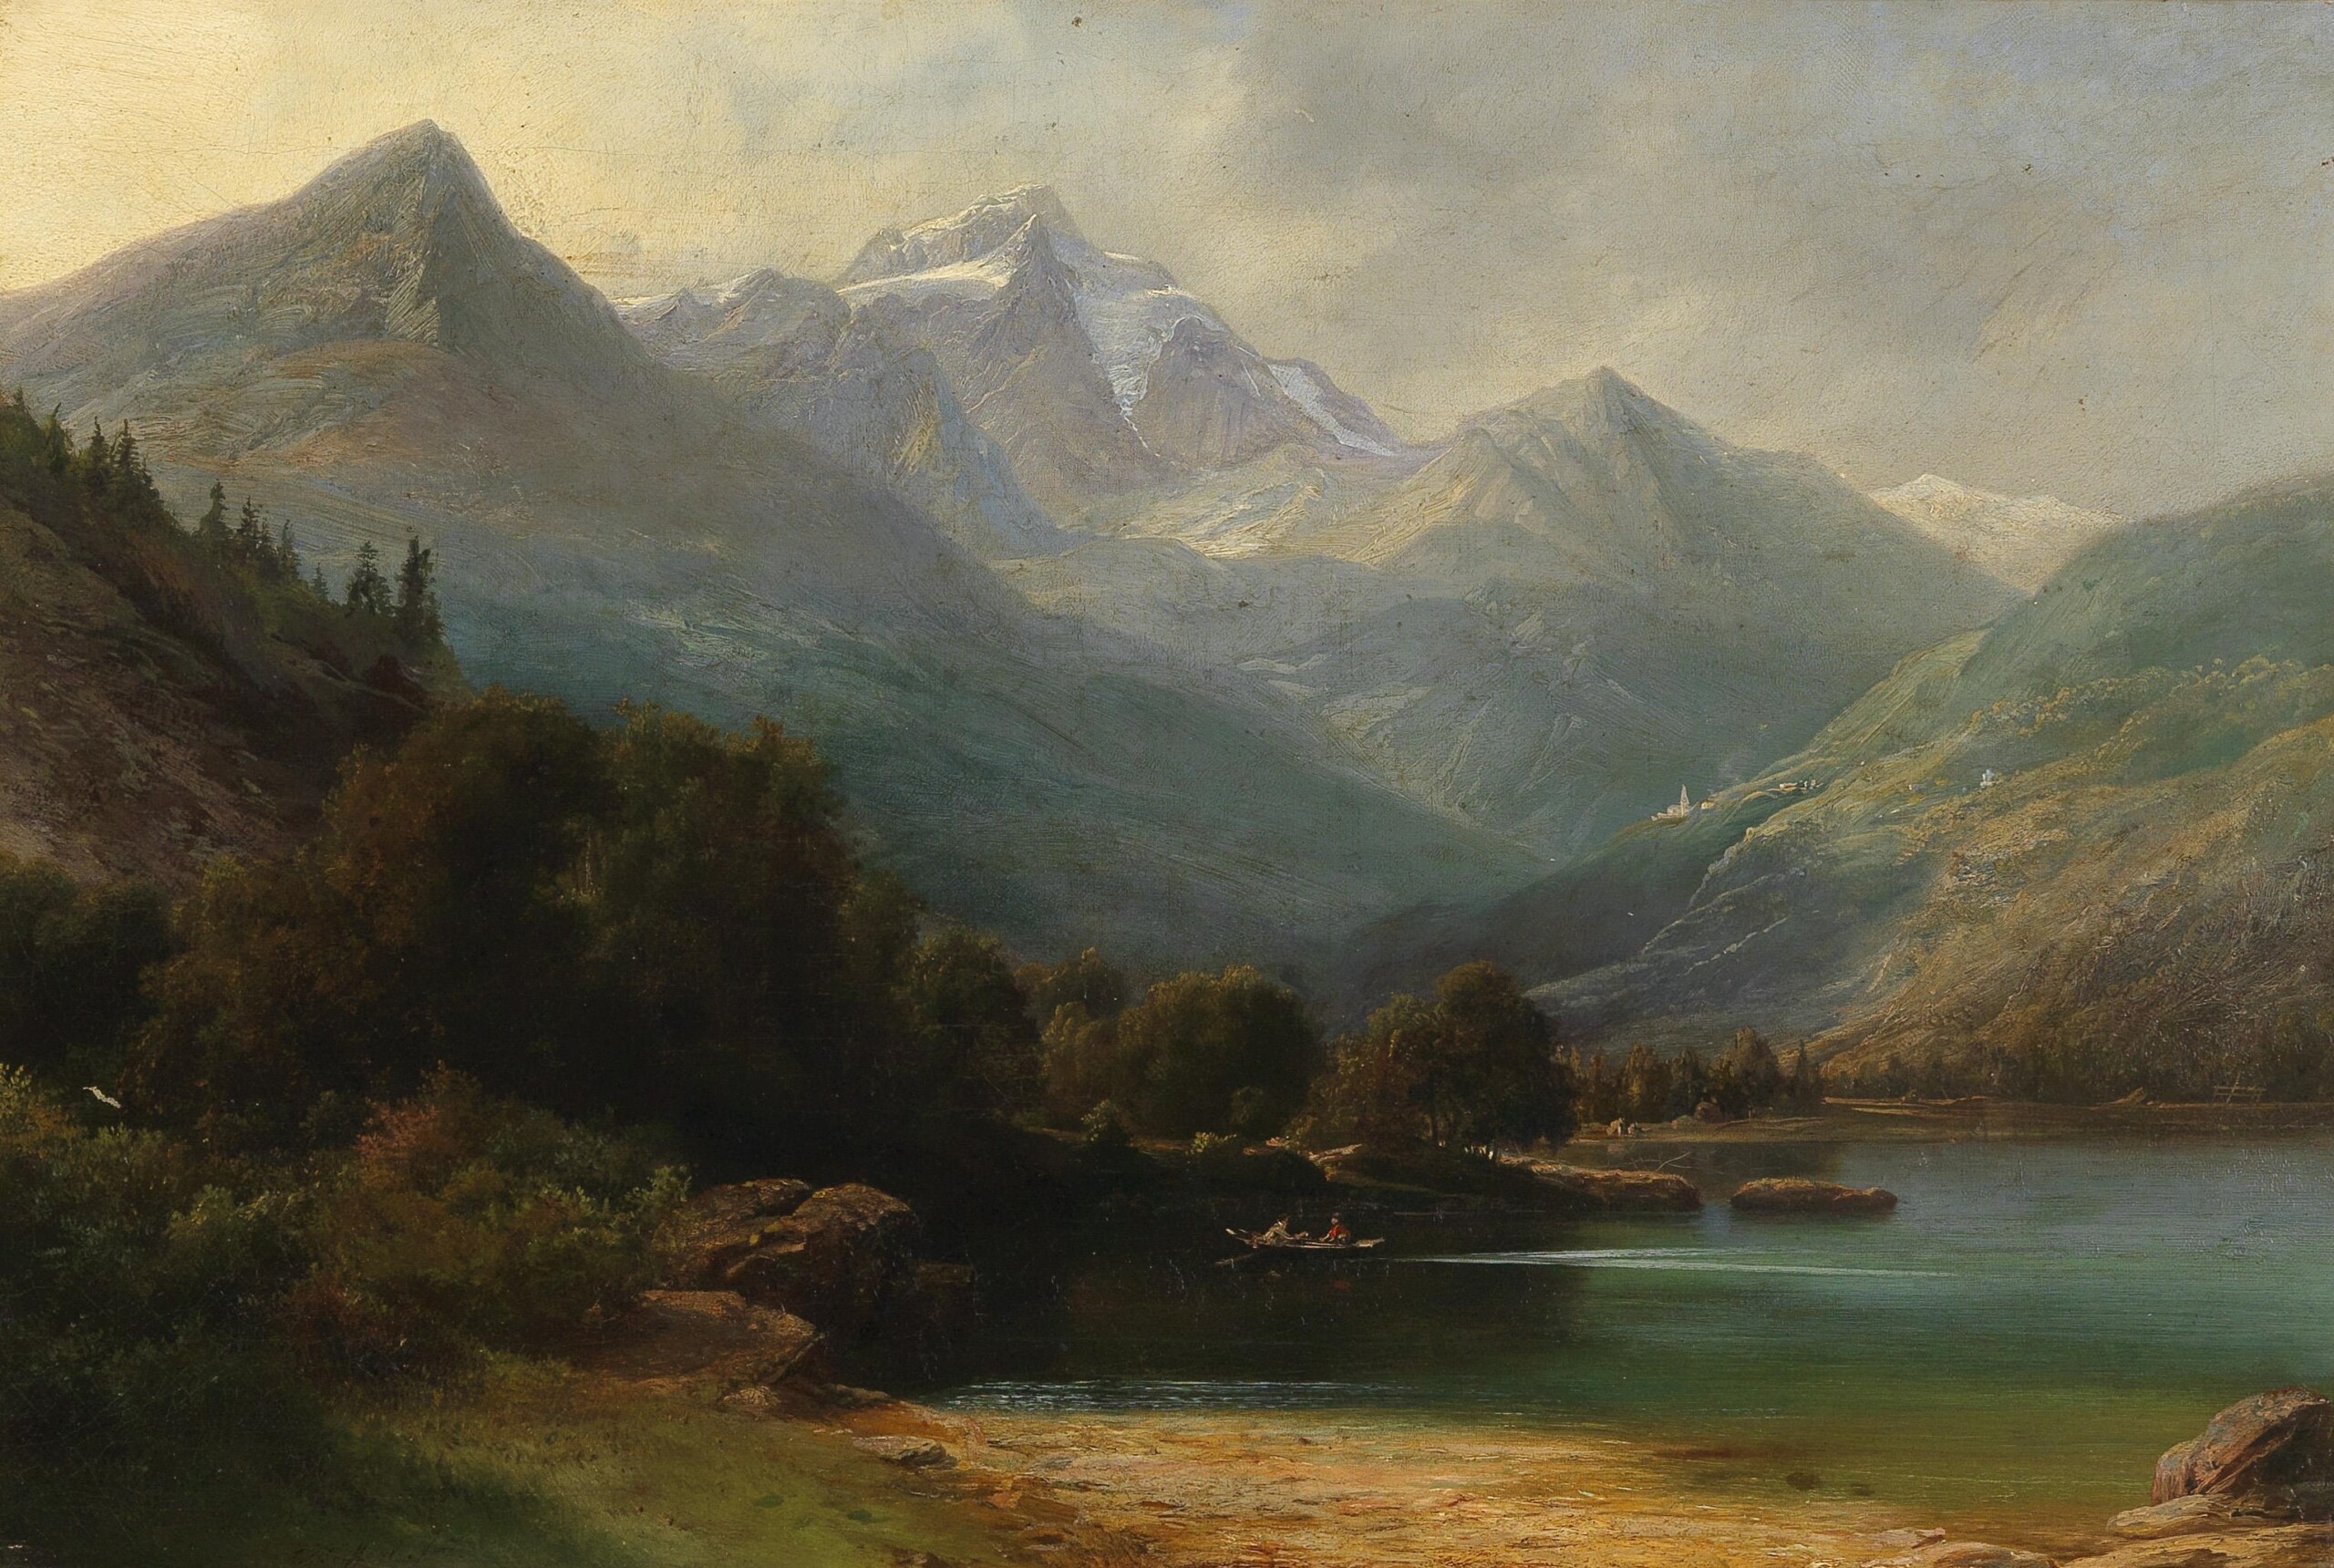 Carl_Friedrich_Seiffert_-_Blick_auf_den_Poschiavo_See_mit_der_Bernina_Kette_(1859)